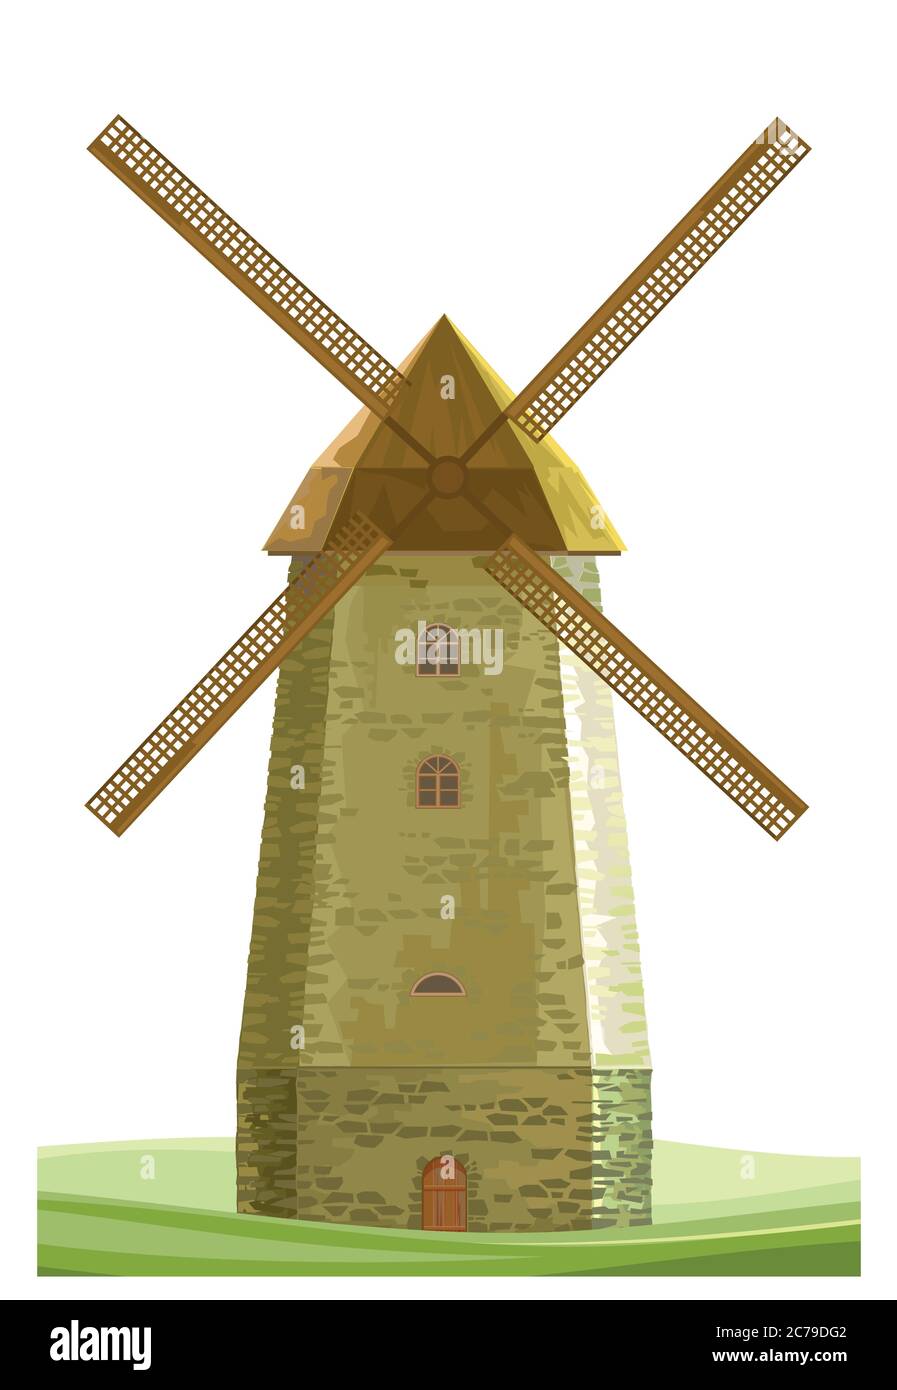 Vecteur isolé du moulin à vent sur fond blanc. Ferme de farine de moulin à vent. Ancienne pierre hollandaise typique moulin à farine traditionnel avec des meules. Fermier RU Illustration de Vecteur